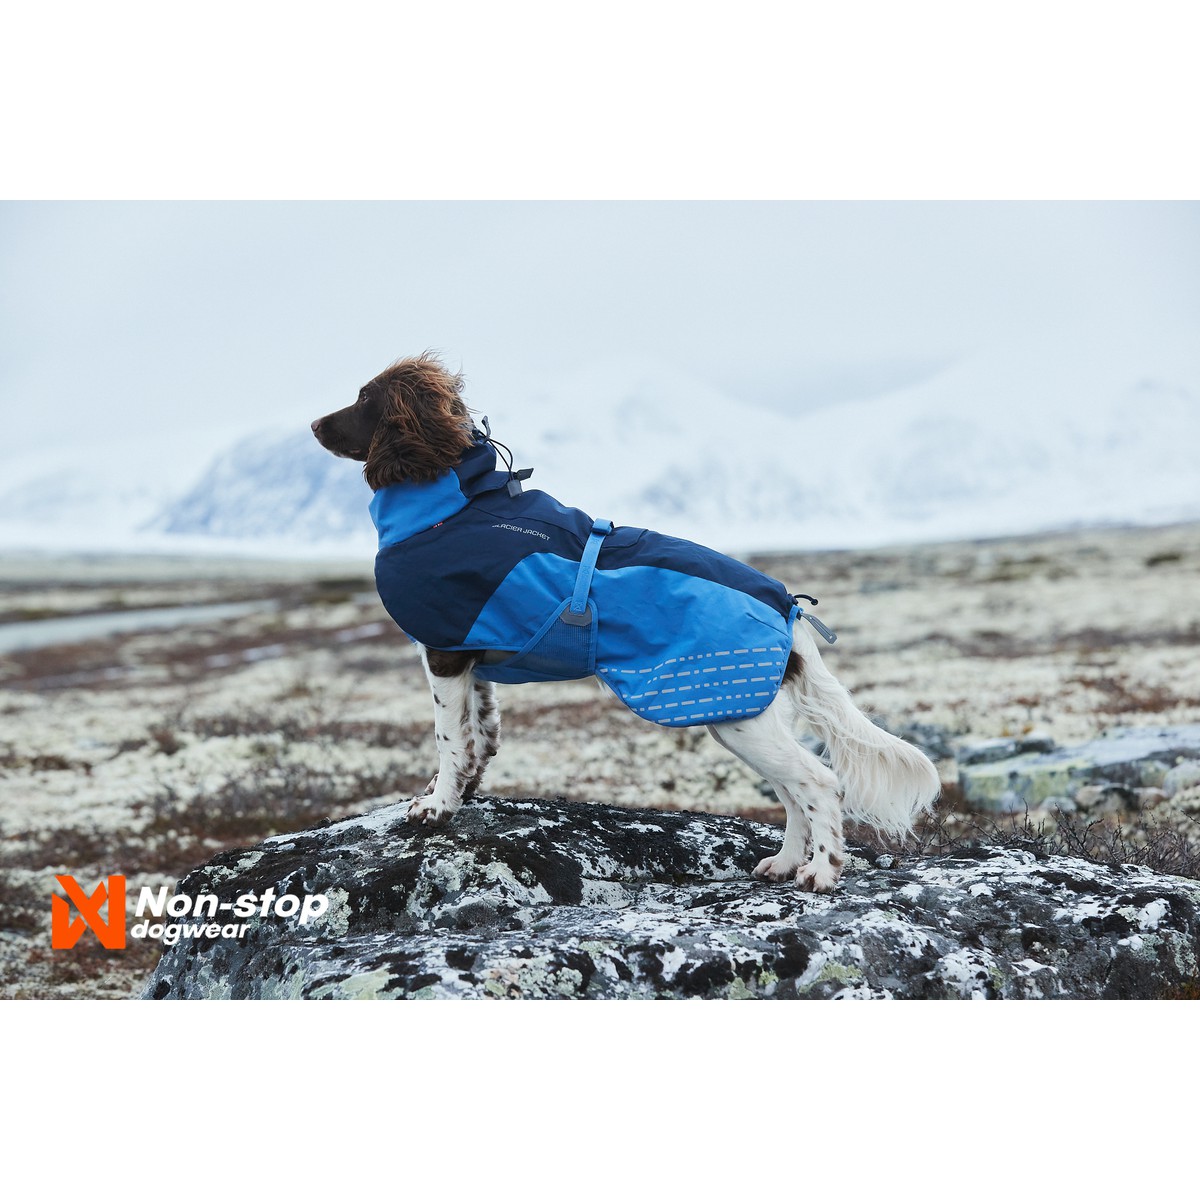 Non-Stop dogwear Glacier Manteau Glacier Jacket T30 Bleu azur foncé T30